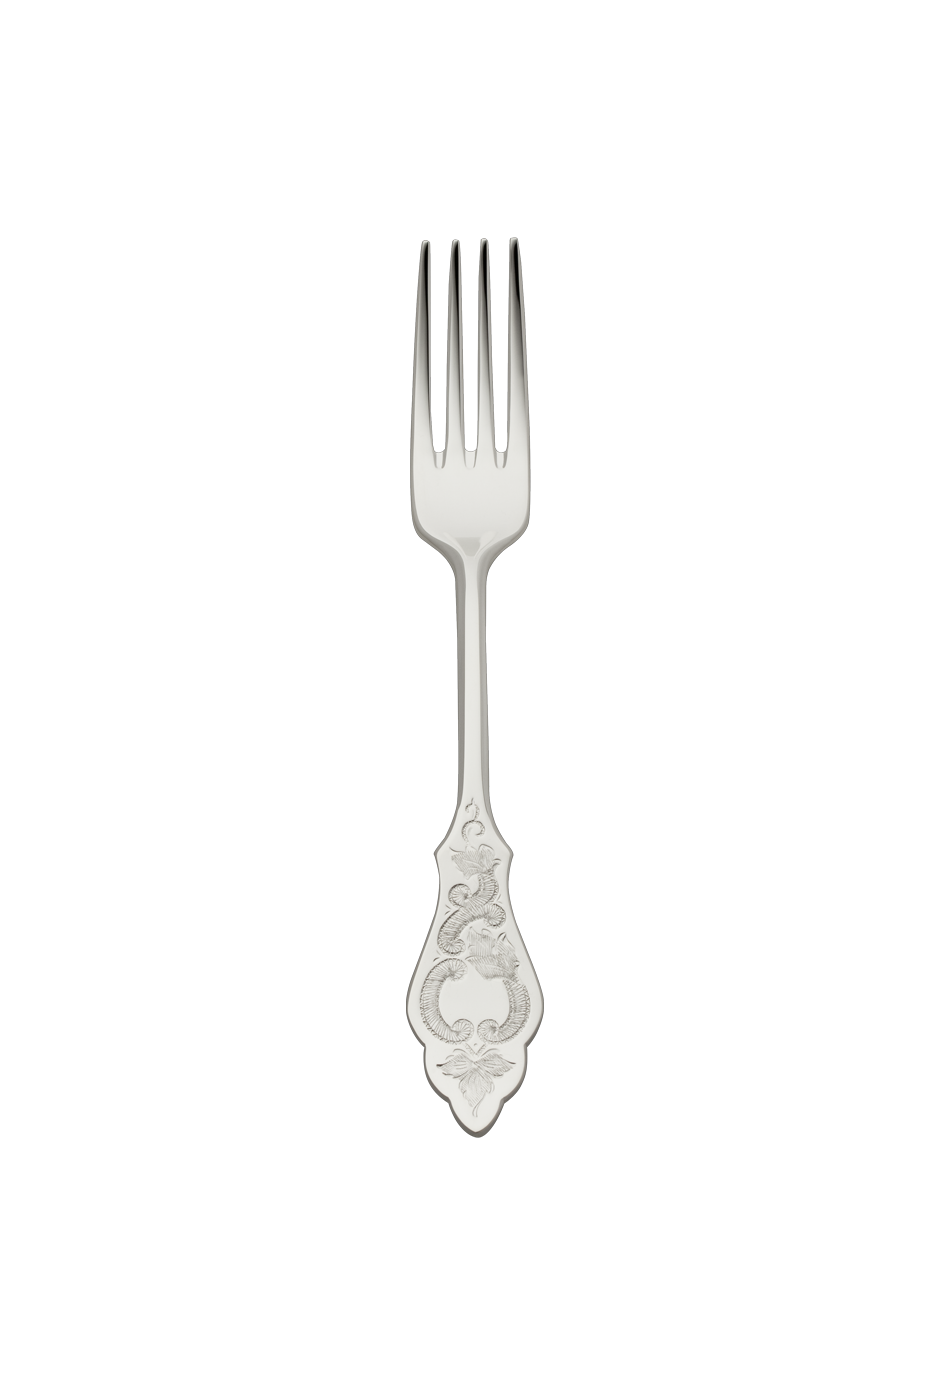 Ostfriesen Menu Fork (18/8 stainless steel)